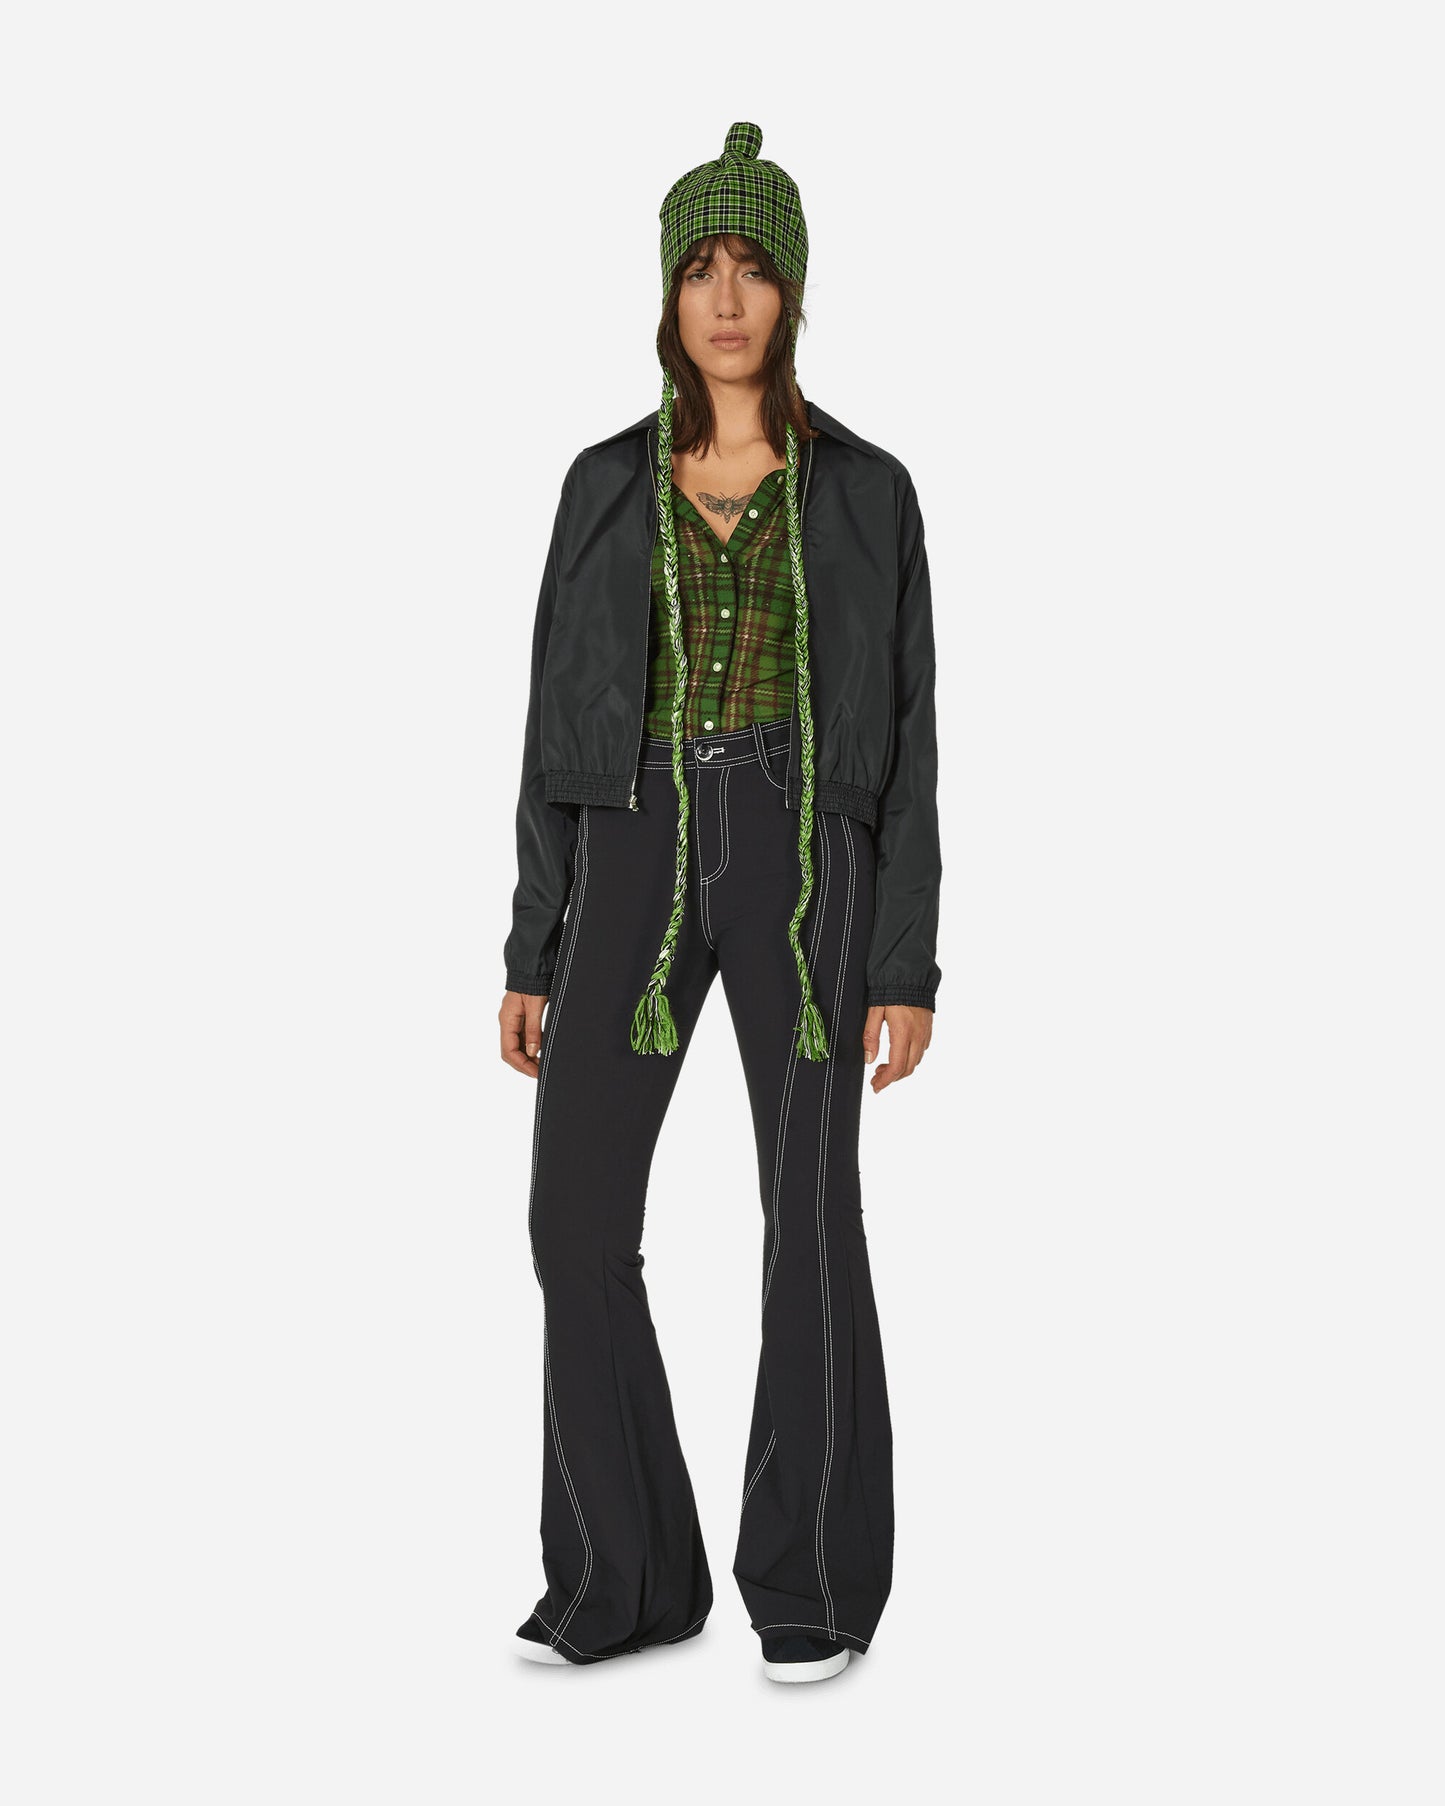 Priscavera Wmns Flared Suit Pants Black Pants Trousers 005069-161 BK